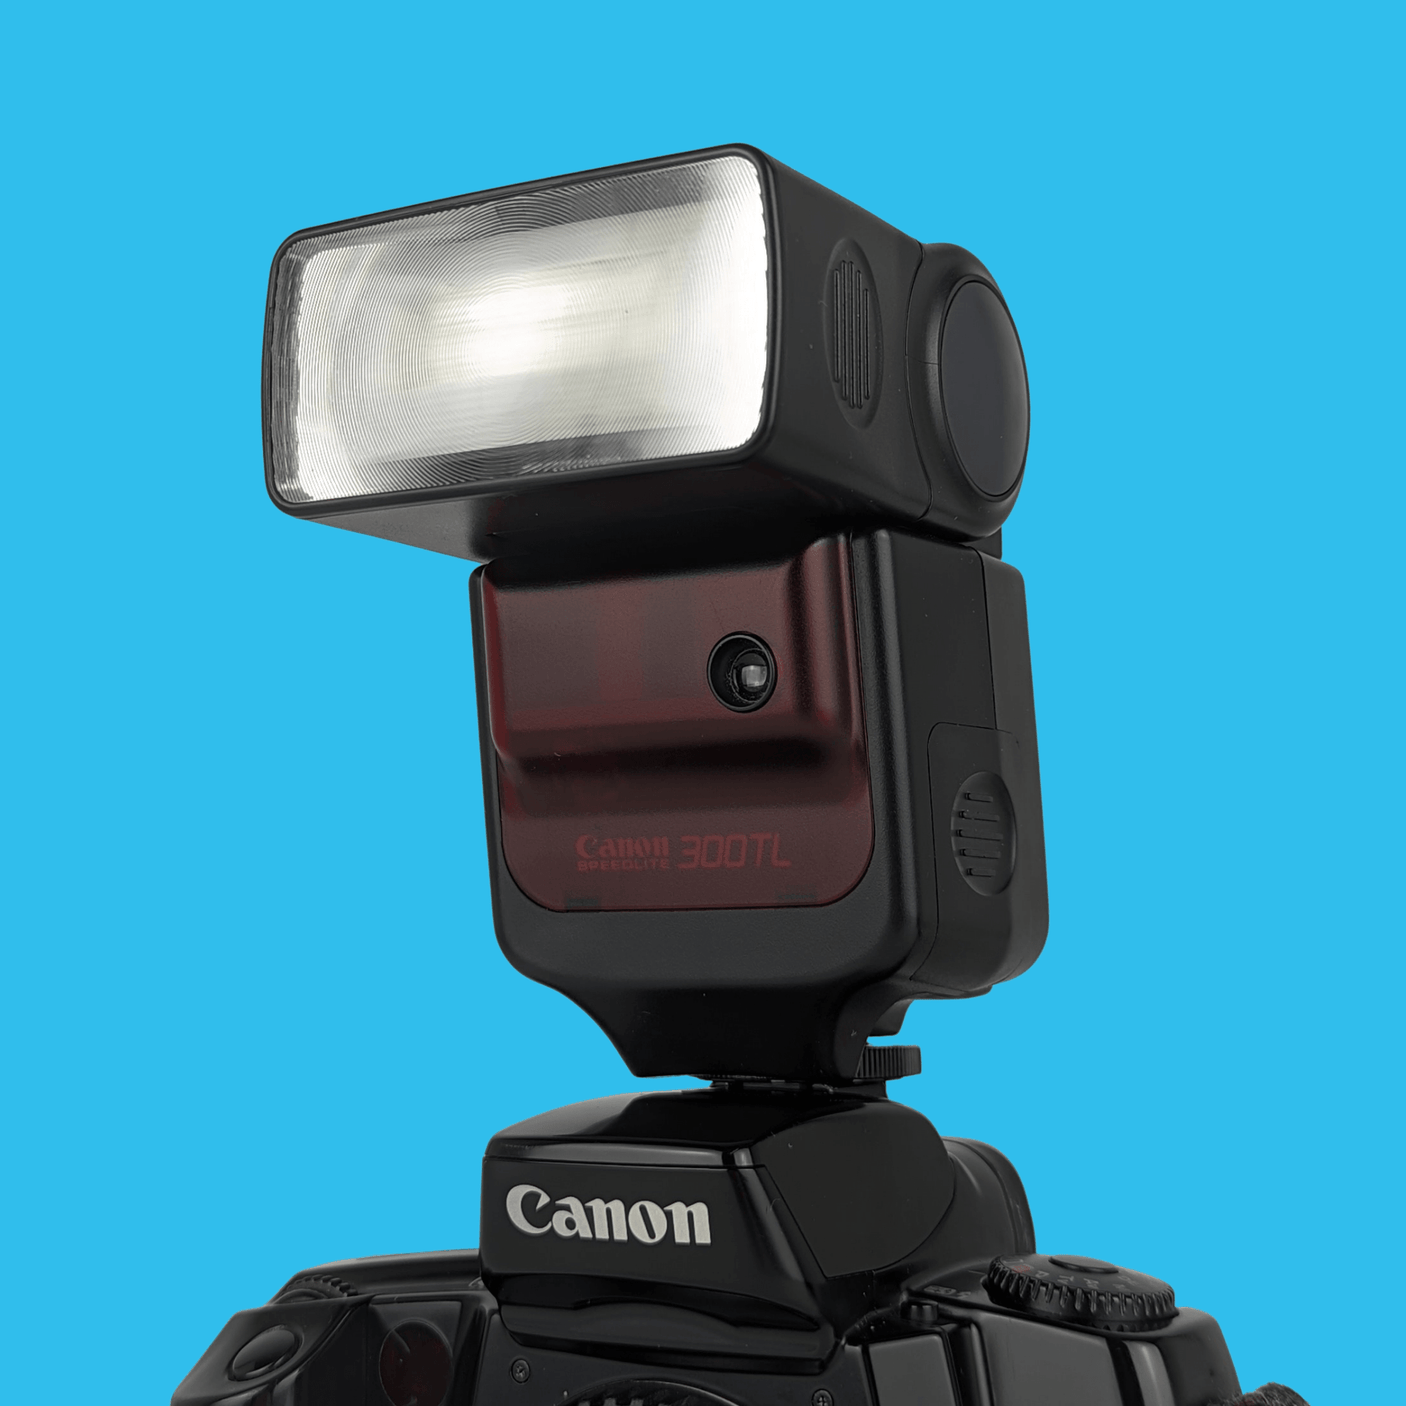 Flash externe Canon 300TL Speedlite pour appareil photo argentique